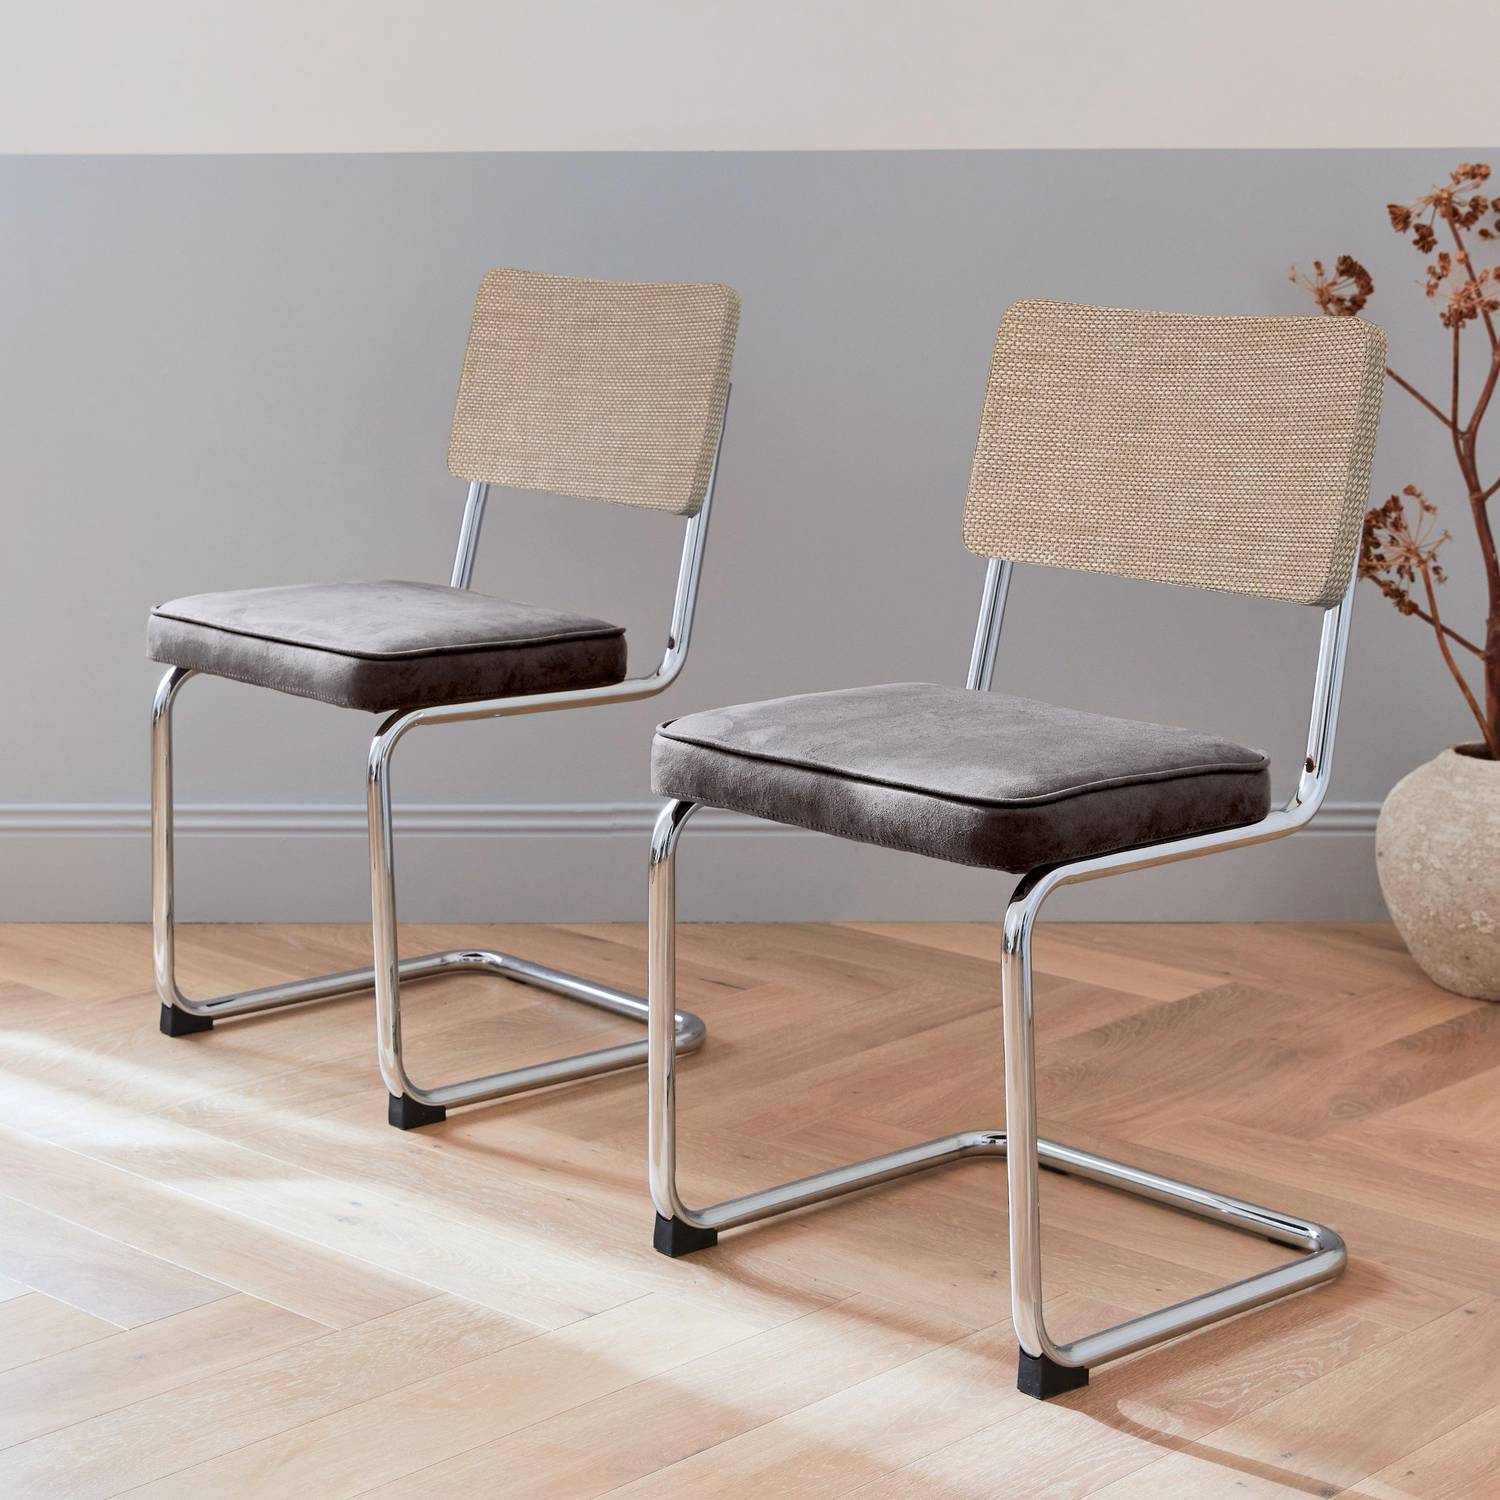 2 cadeiras cantilever - Maja - tecido preto e resina com efeito de vime, 46 x 54,5 x 84,5 cm Photo1